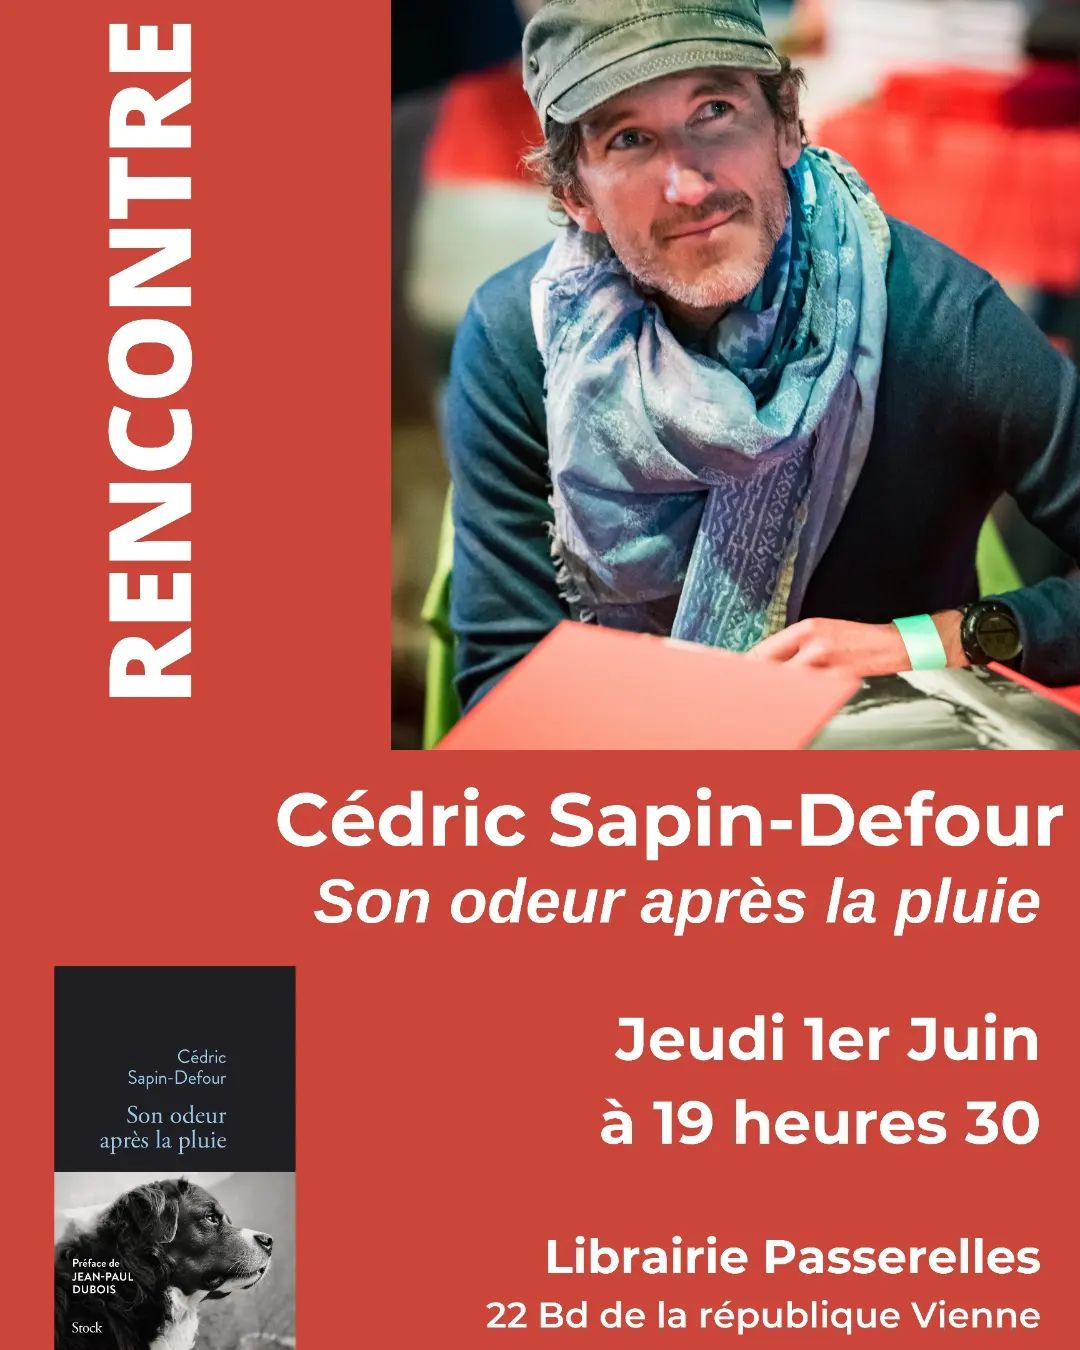 Passerelles - Rencontre avec Cédric Sapin-Defour